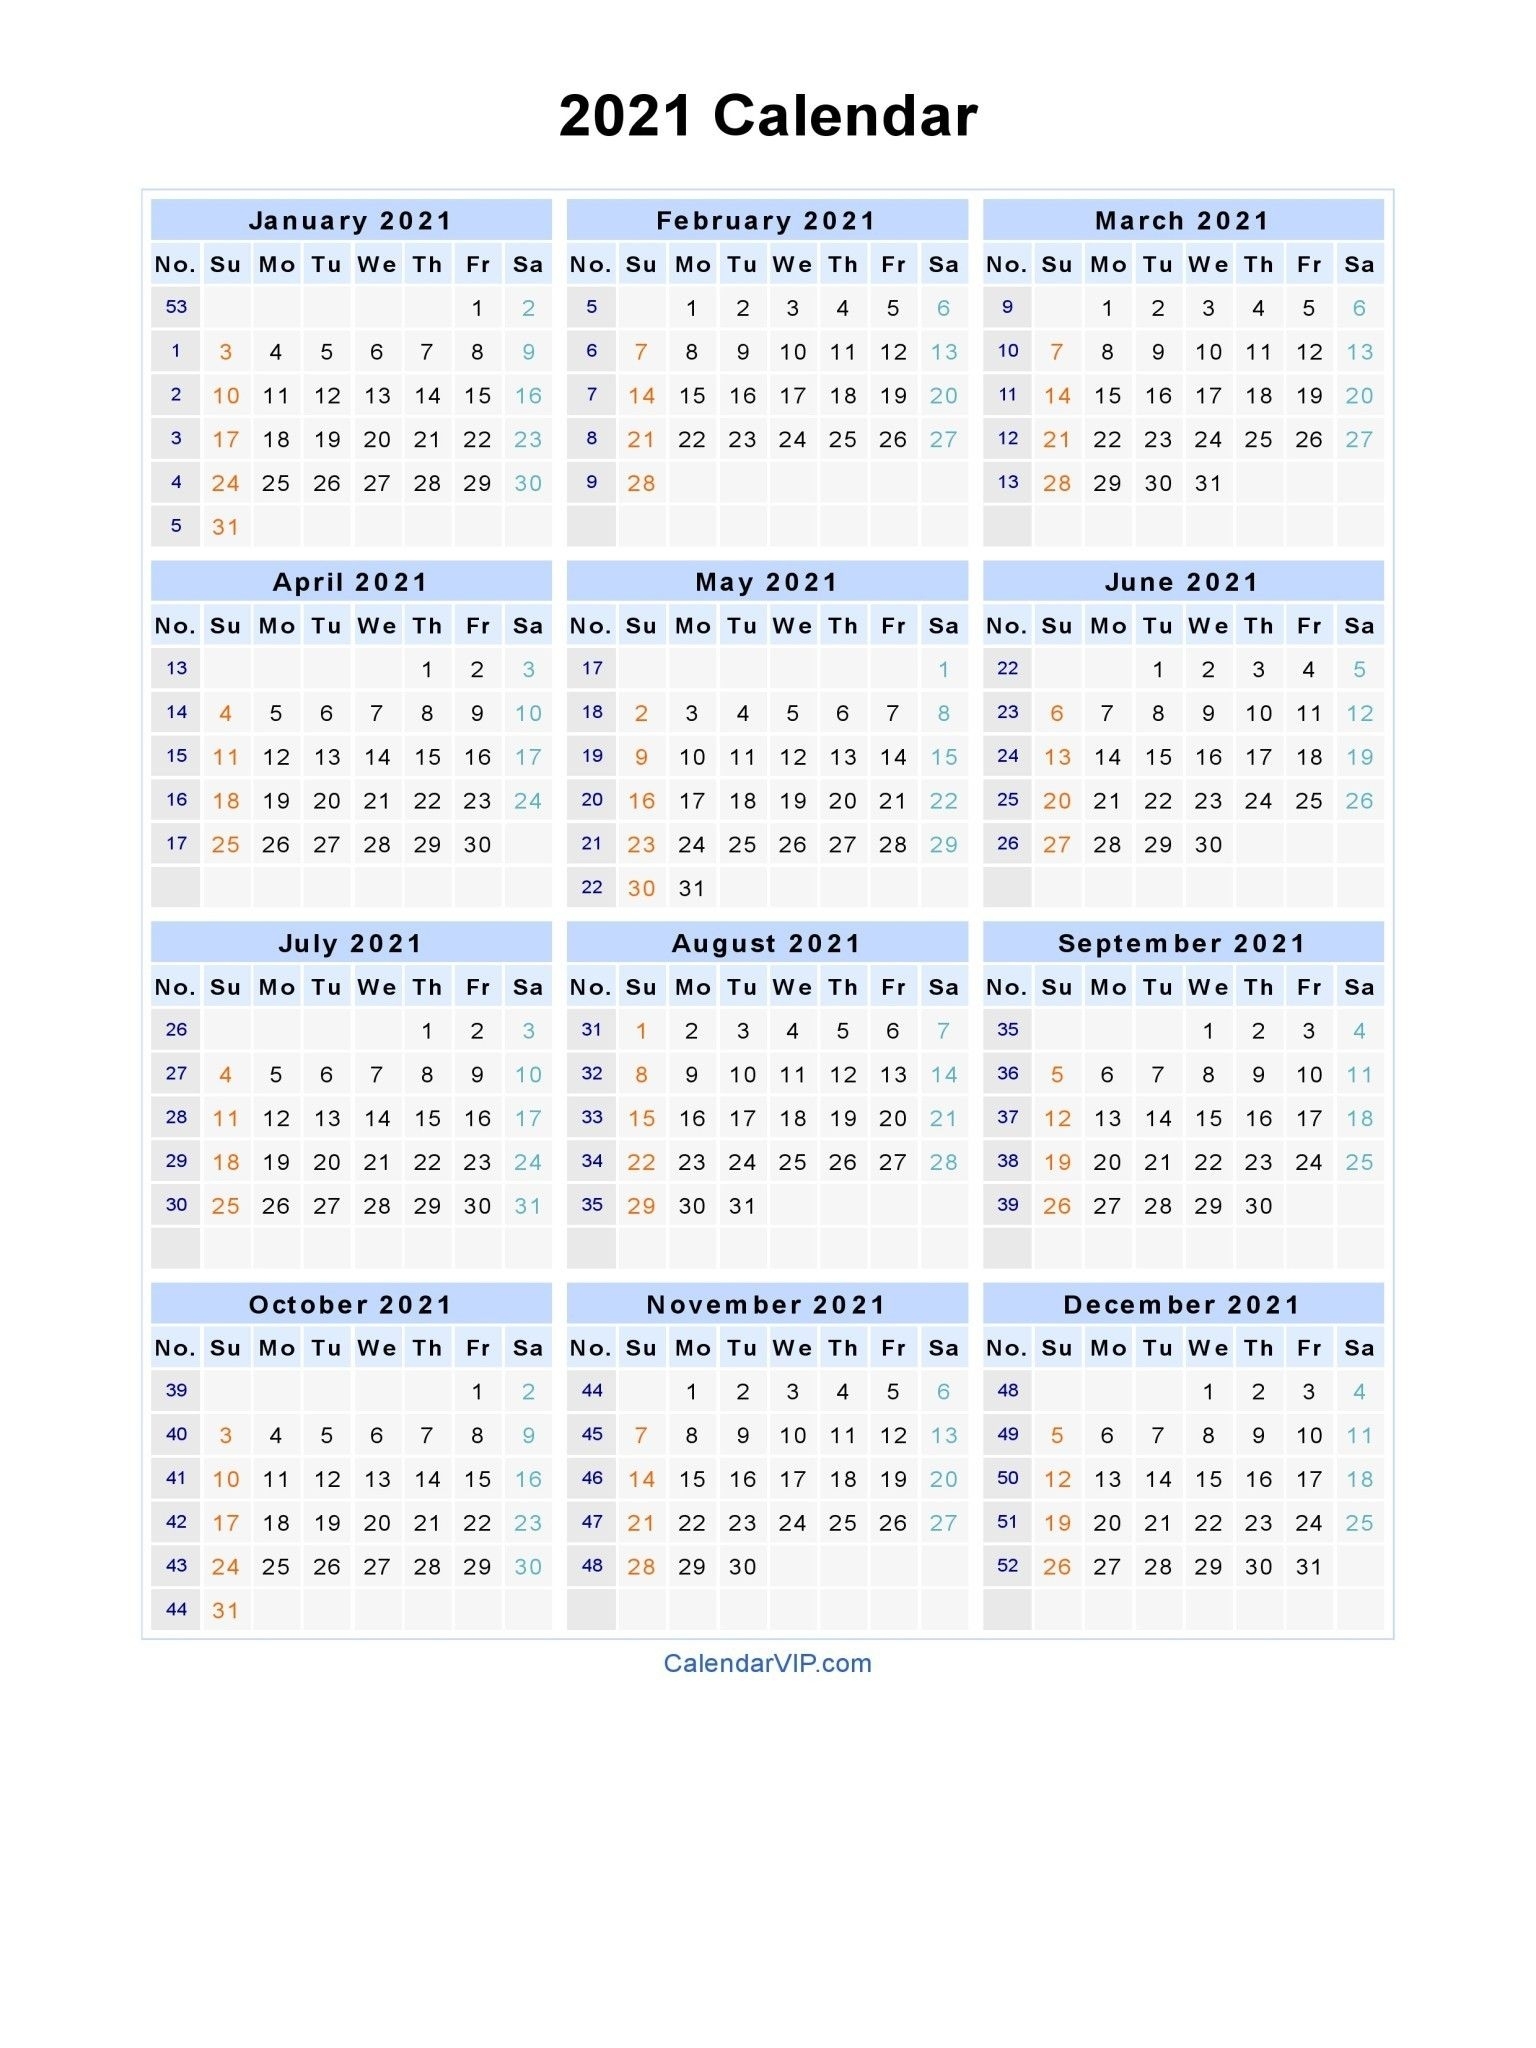 Get Calendar Weeks 2021 Excel